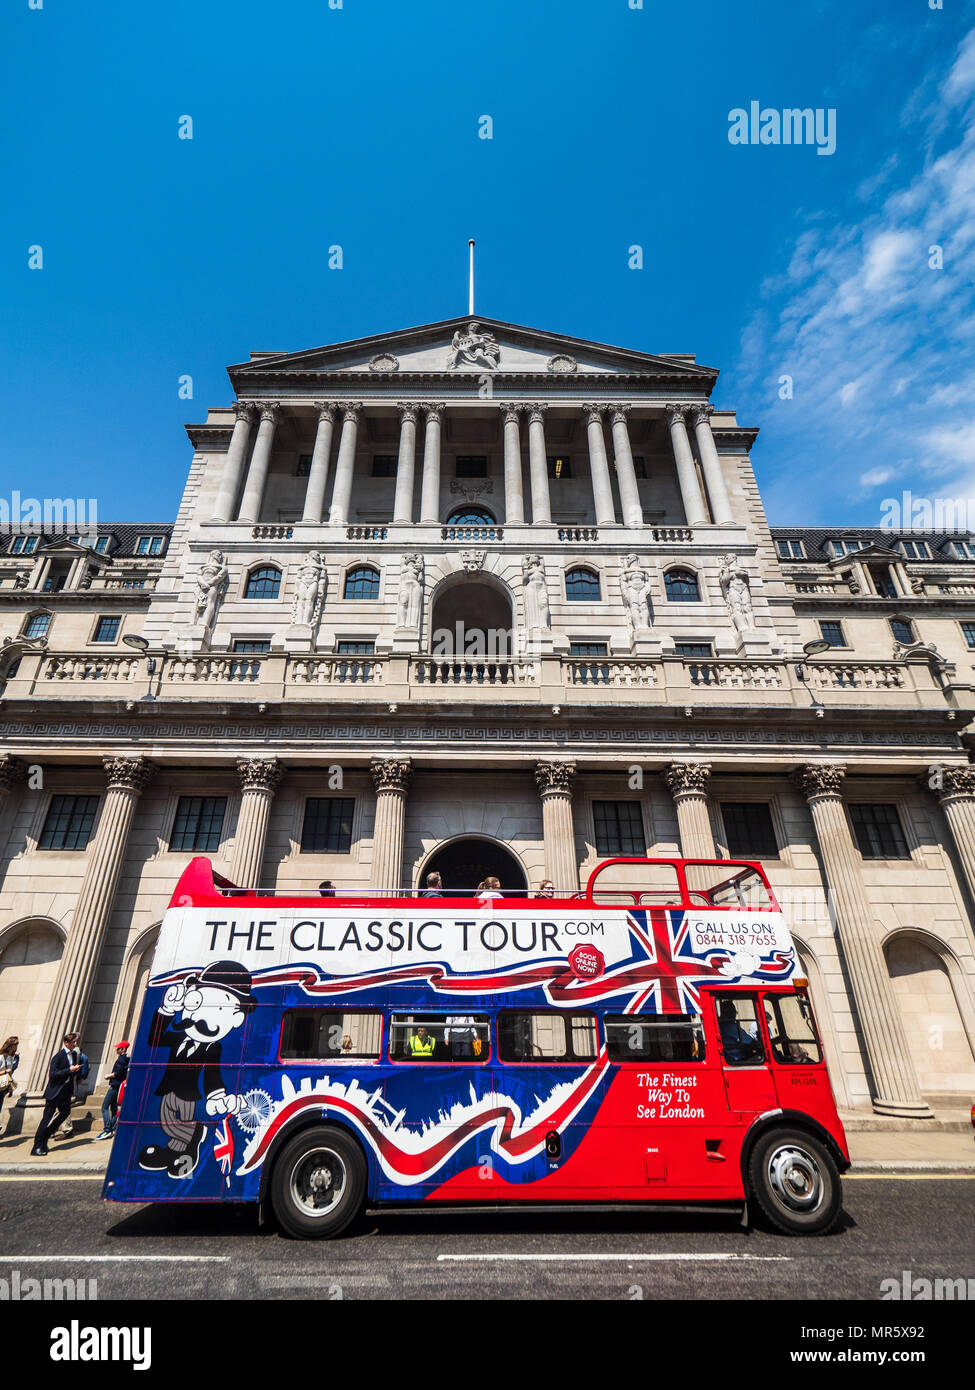 "Banque d'Angleterre' Londres - un tour bus s'arrête à l'extérieur de la Banque d'Angleterre à Threadneedle Street dans la ville de Londres Banque D'Images